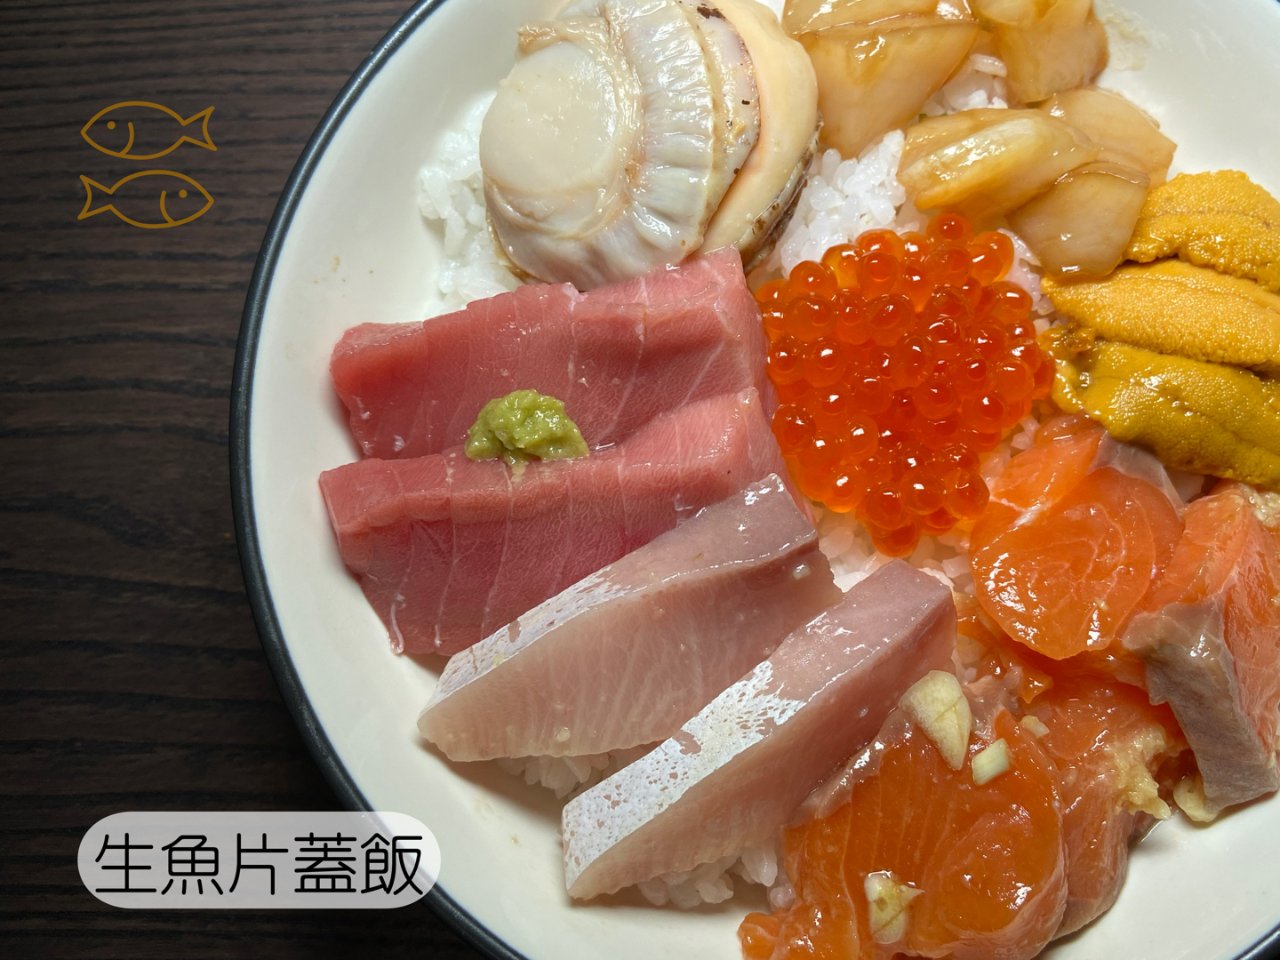 日式生魚片蓋飯🐟口水快流滿地了🤤🤤🤤...